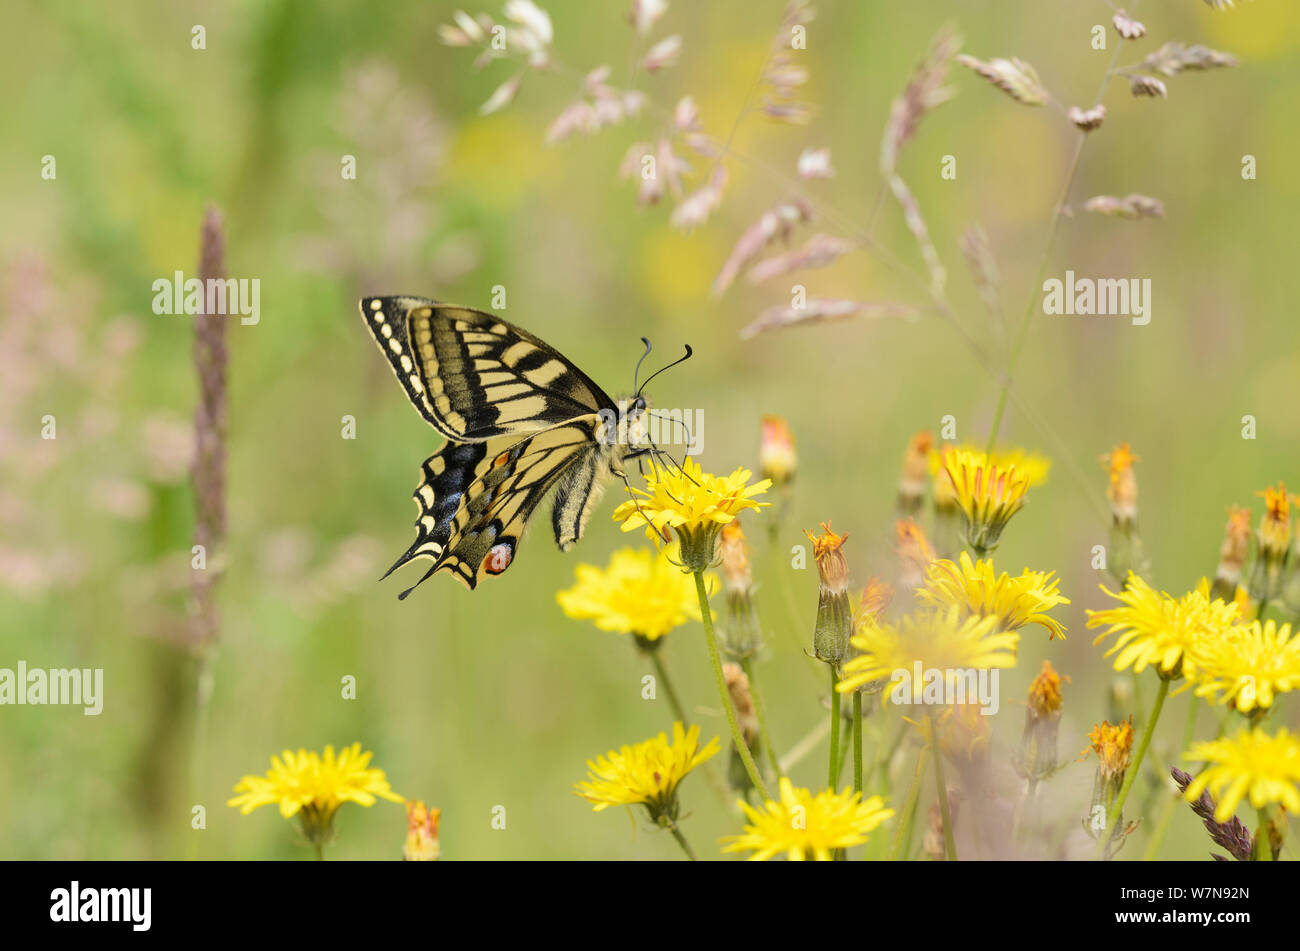 Schwalbenschwanz Schmetterling (Zygaena Filipendulae britannicus) Fütterung auf hawkbit Blume. Strumpshaw Fen, Norfolk, Juni. Wussten Sie schon? Swallowtail Schmetterlinge sind die größten Schmetterlingsarten in Großbritannien - mit einer Spannweite von 10 cm. Stockfoto